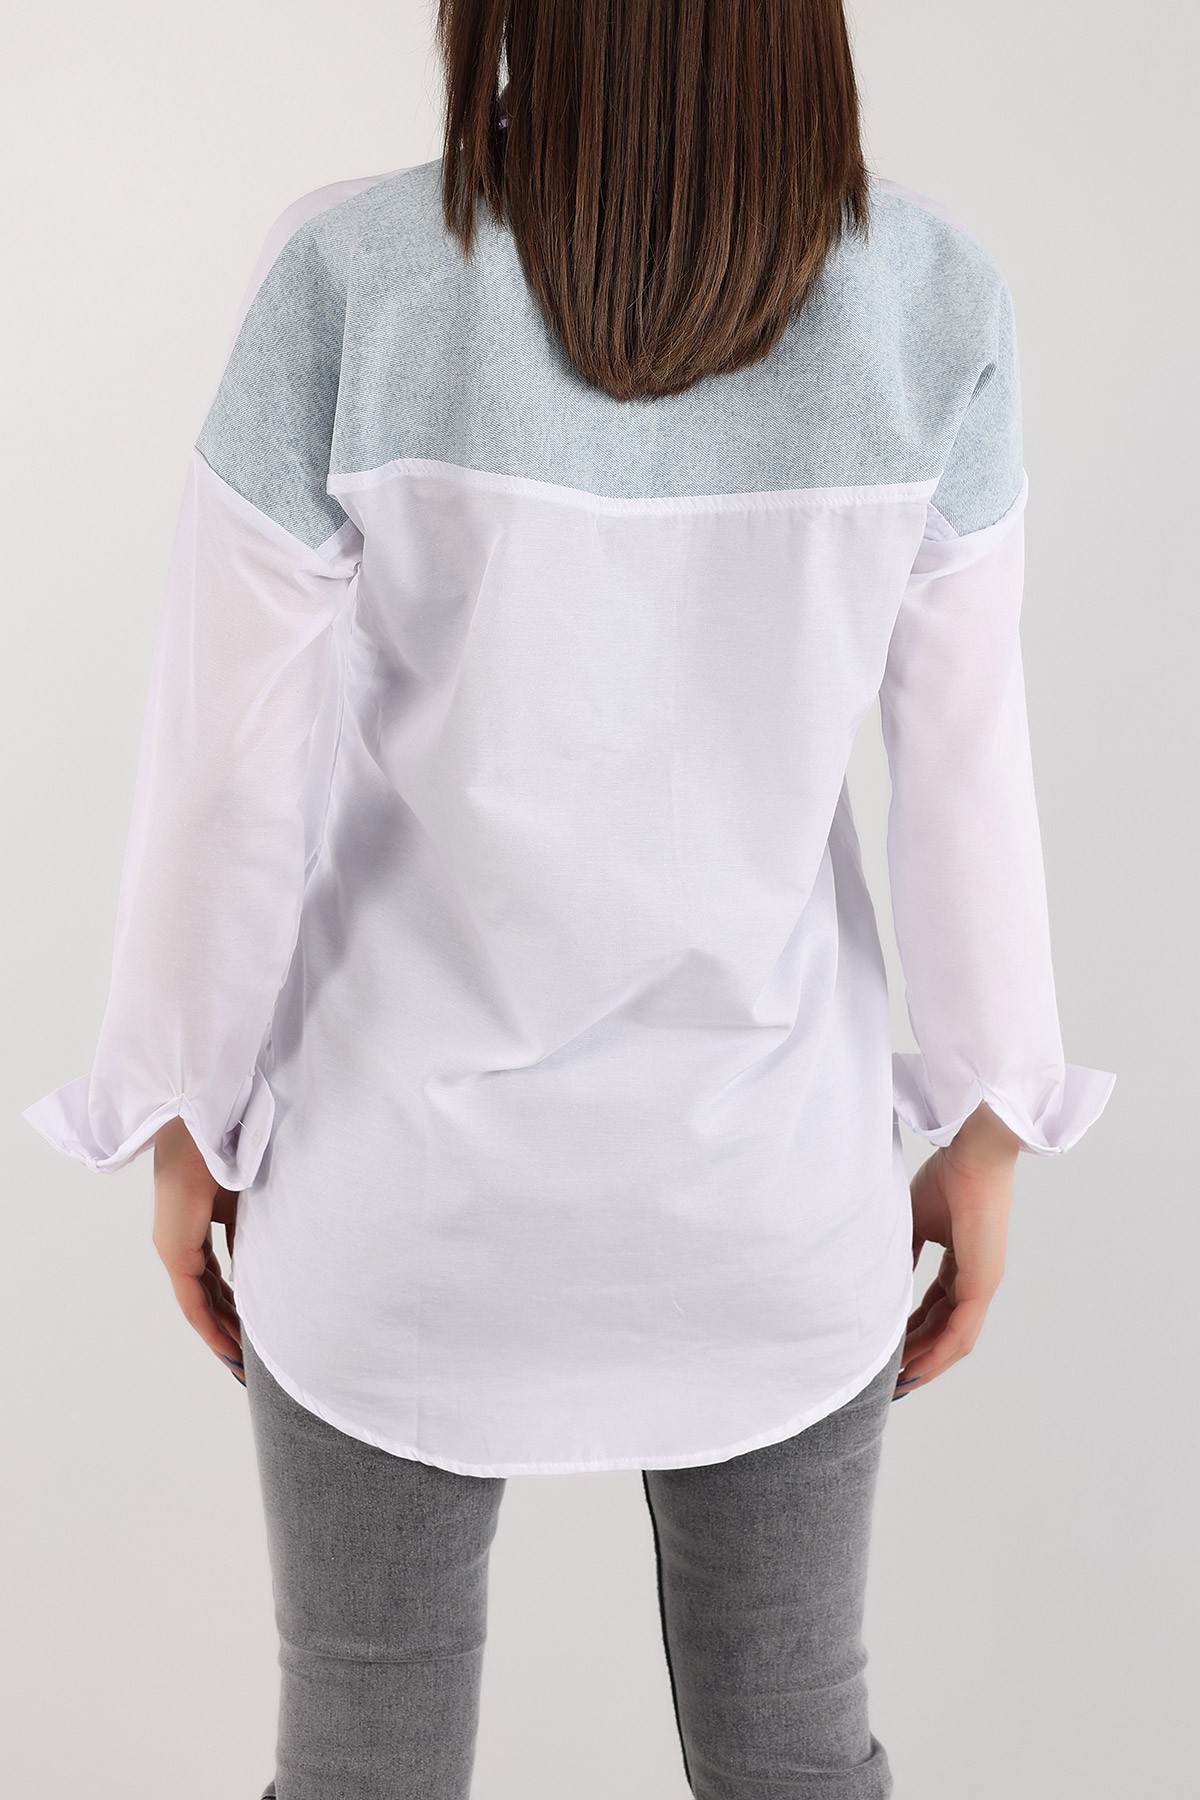 Beyaz Kot Garnili İncili Tasarım Poplin Gömlek Tunik 168468